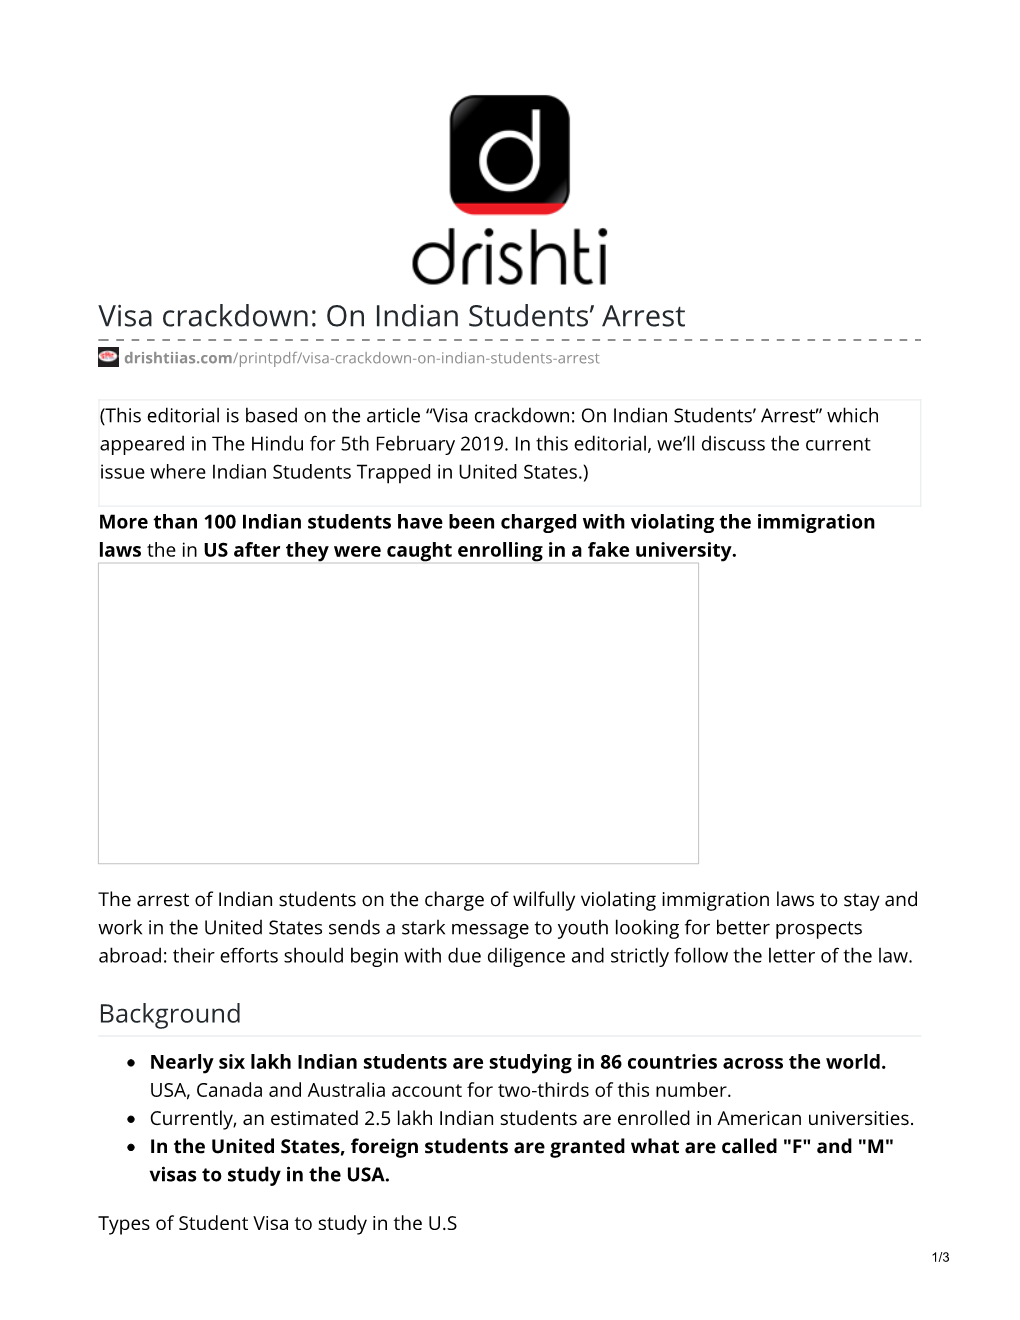 Visa Crackdown: on Indian Students' Arrest